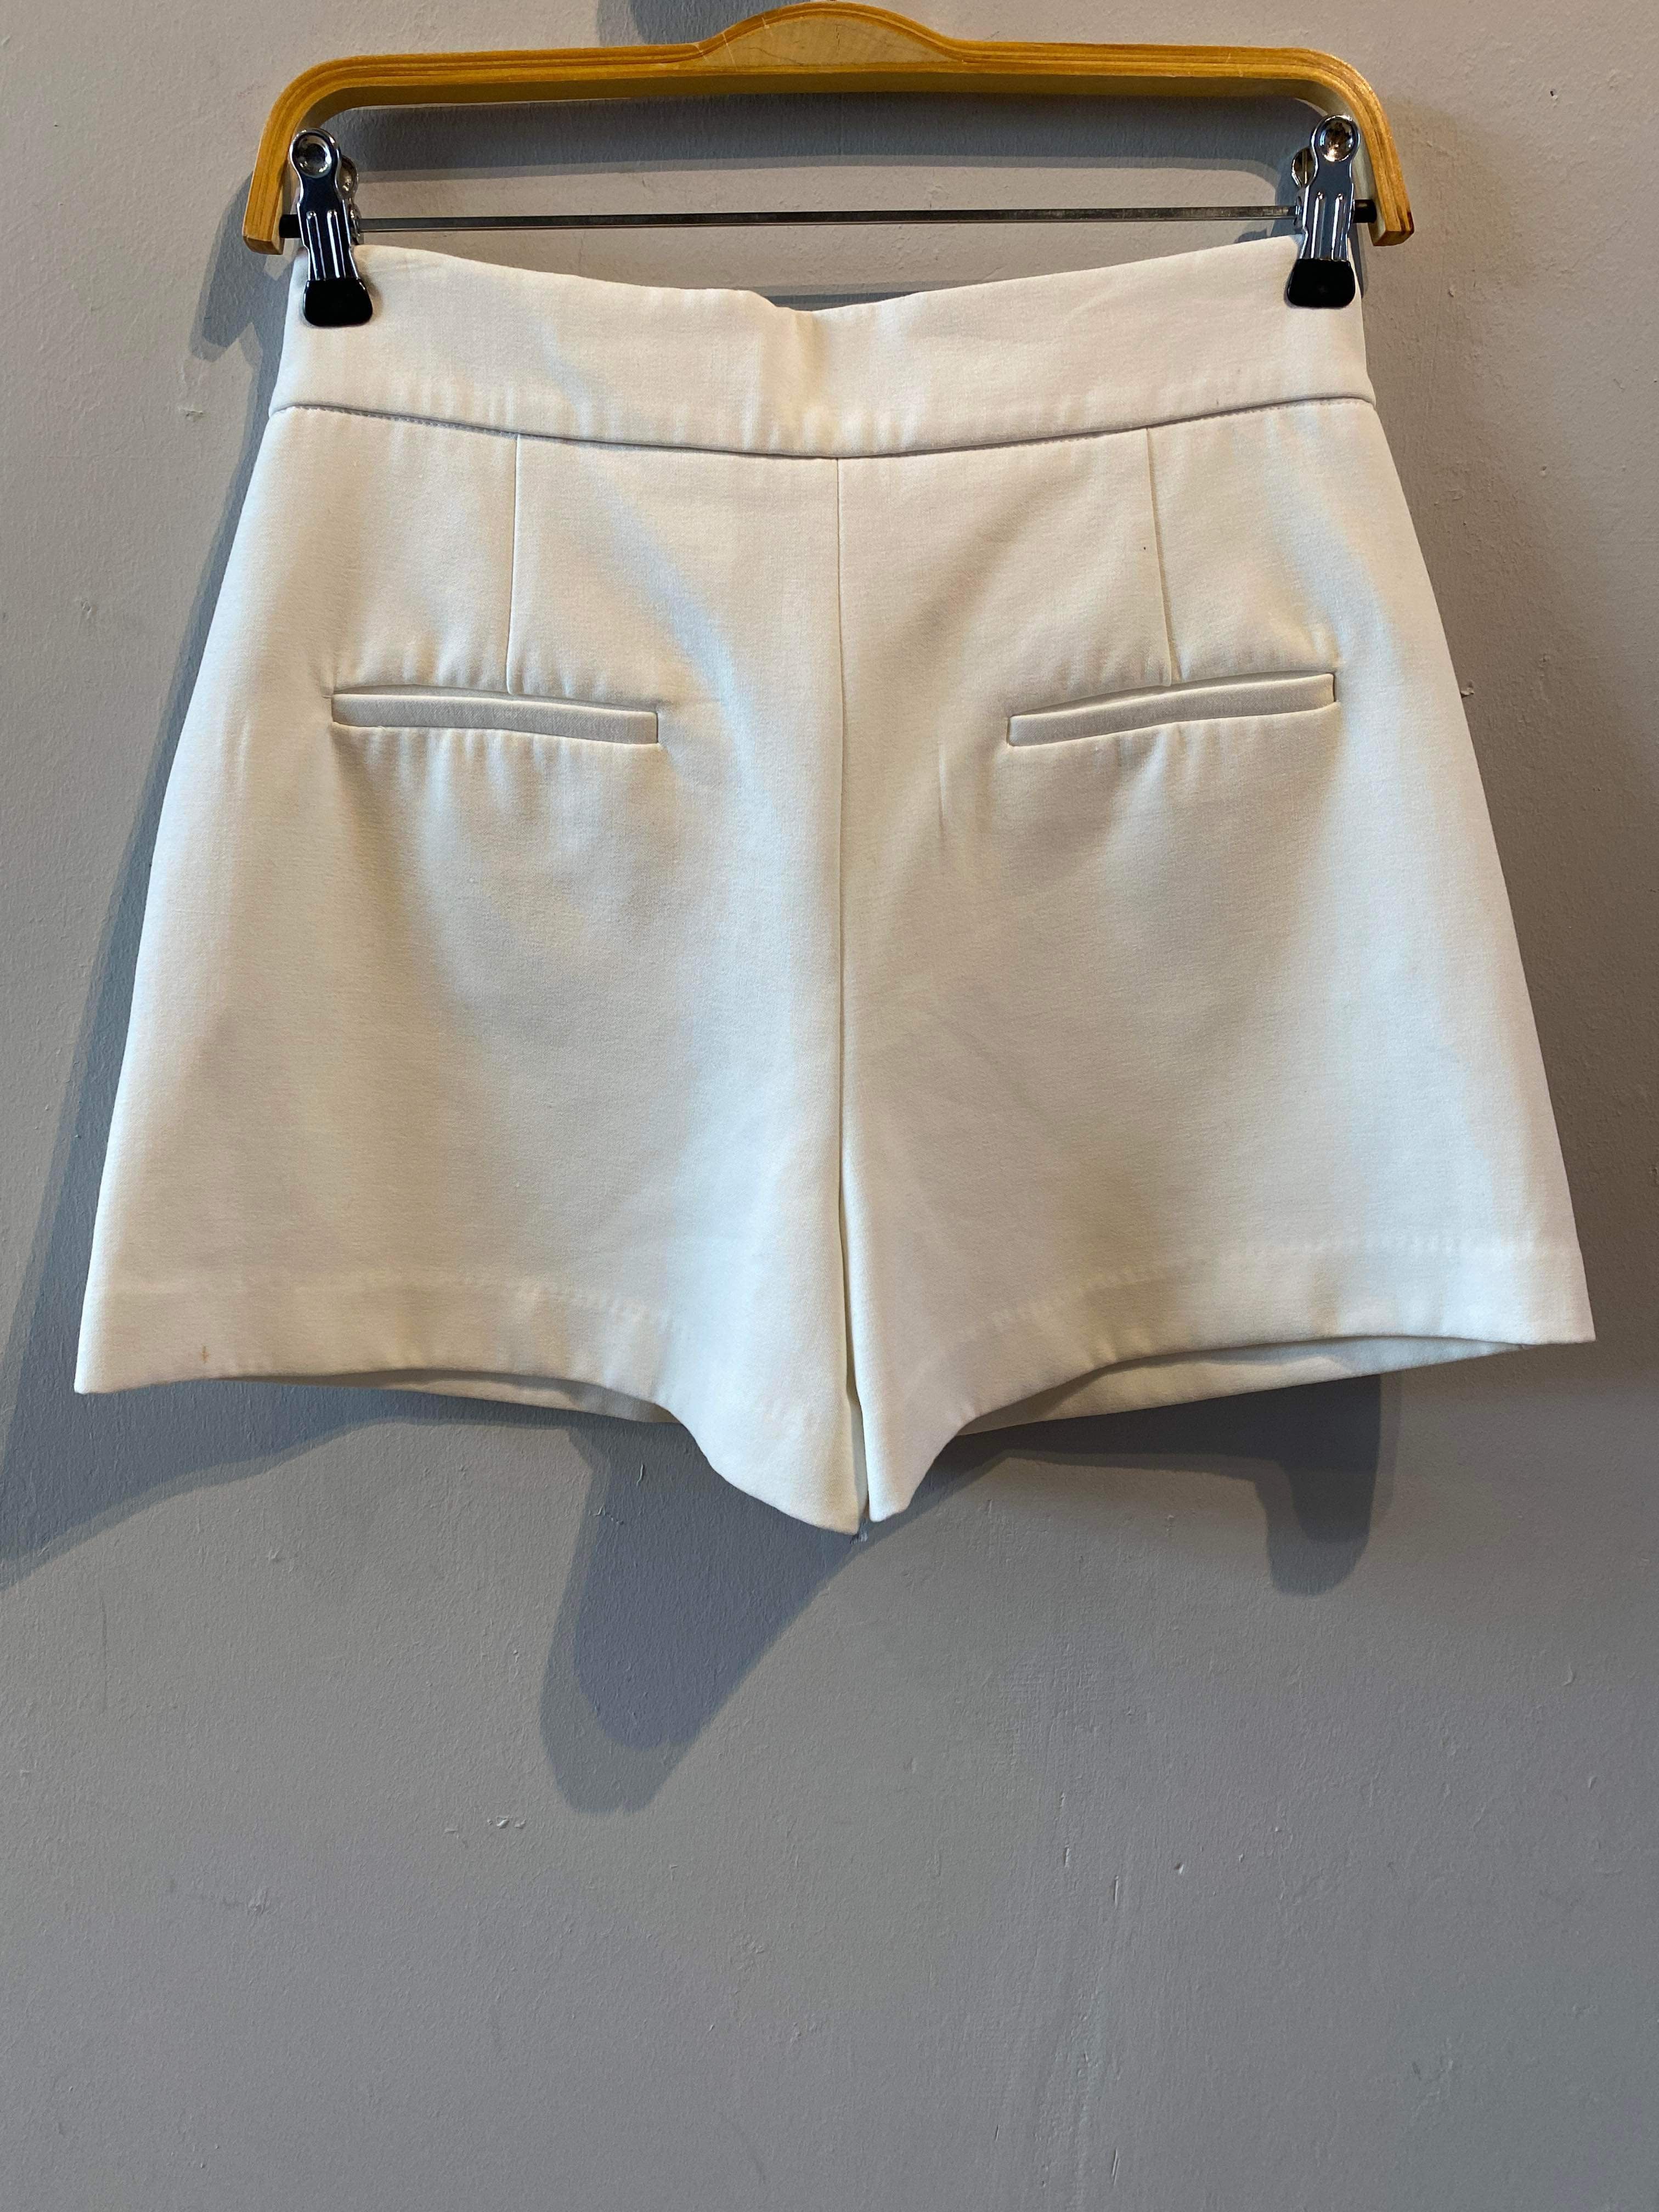 Zara - Shorts - Size: M